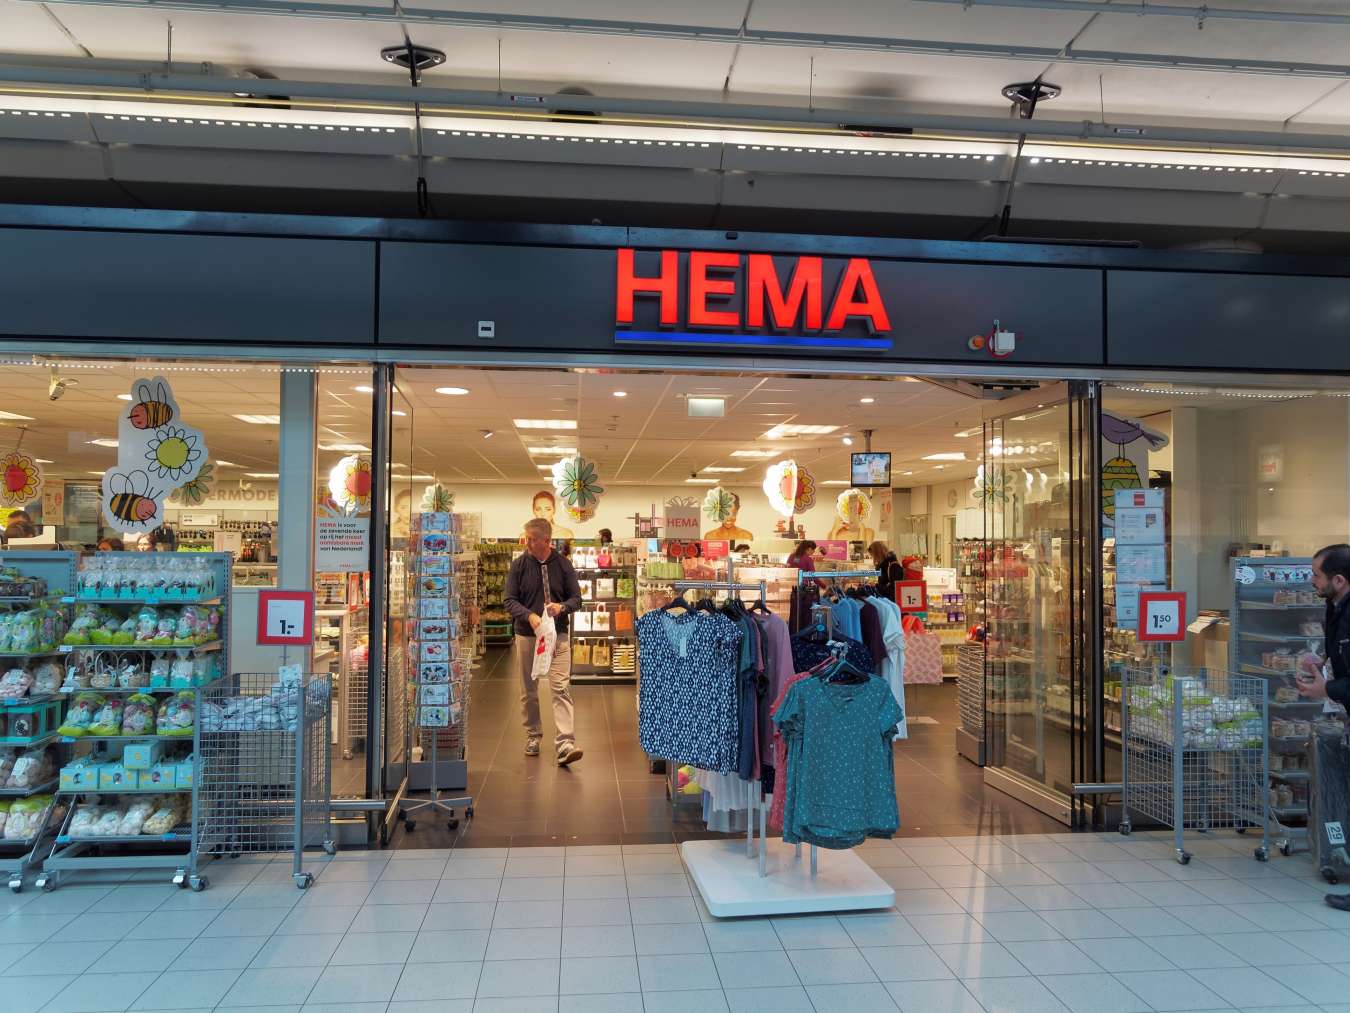 De neiging hebben Altijd monteren Hema maakt kassa's van medewerkers - RetailDetail BE